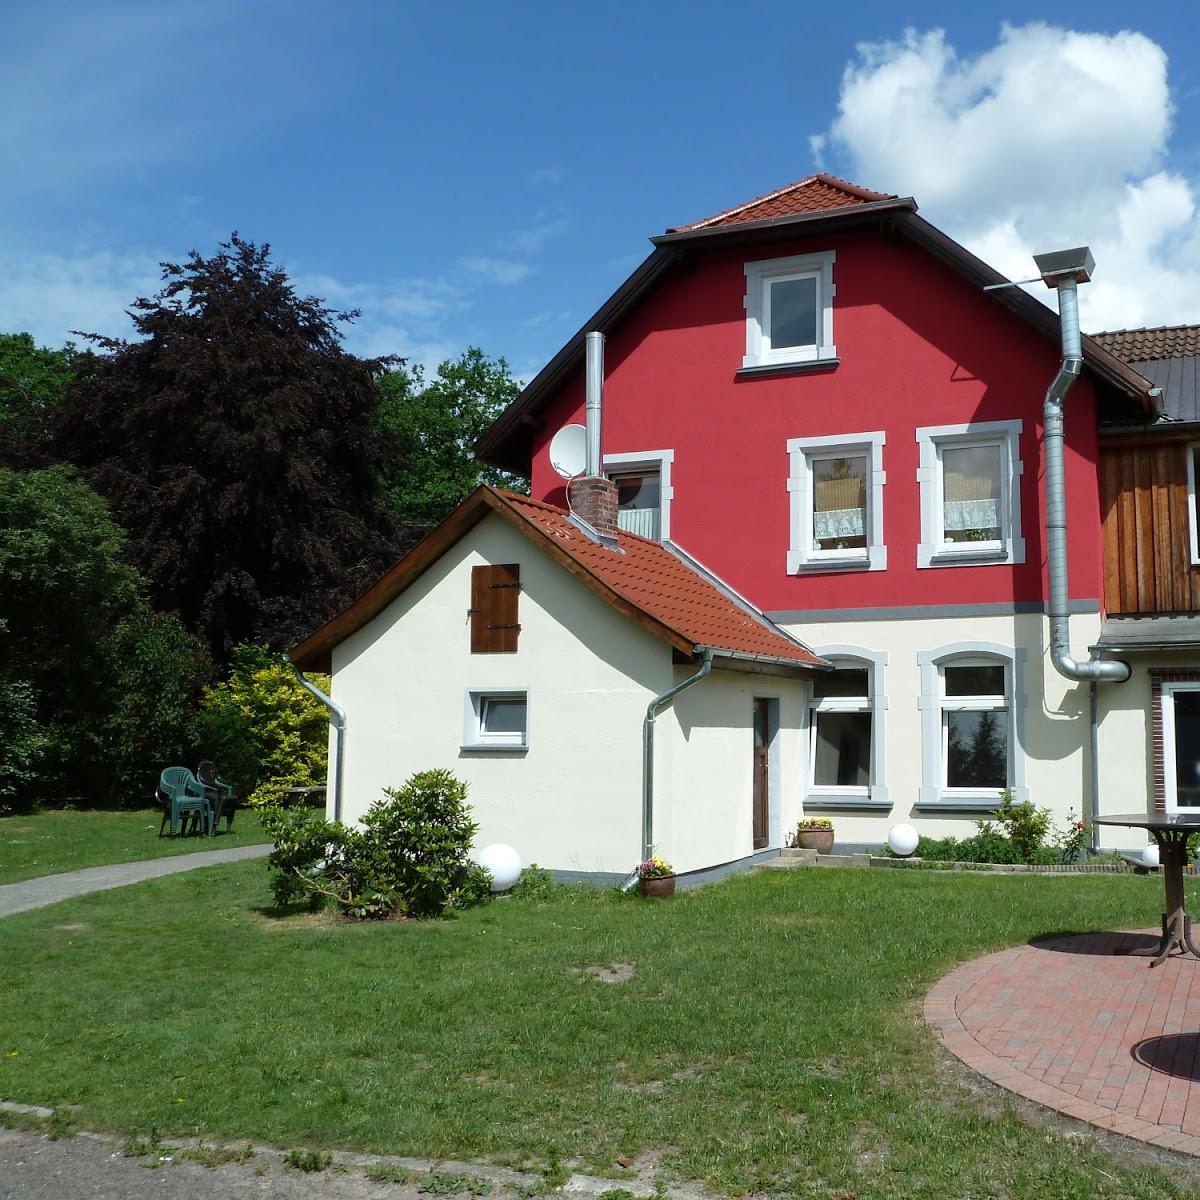 Restaurant "Scharnhorster Dorf- und Gasthaus GmbH" in Eschede